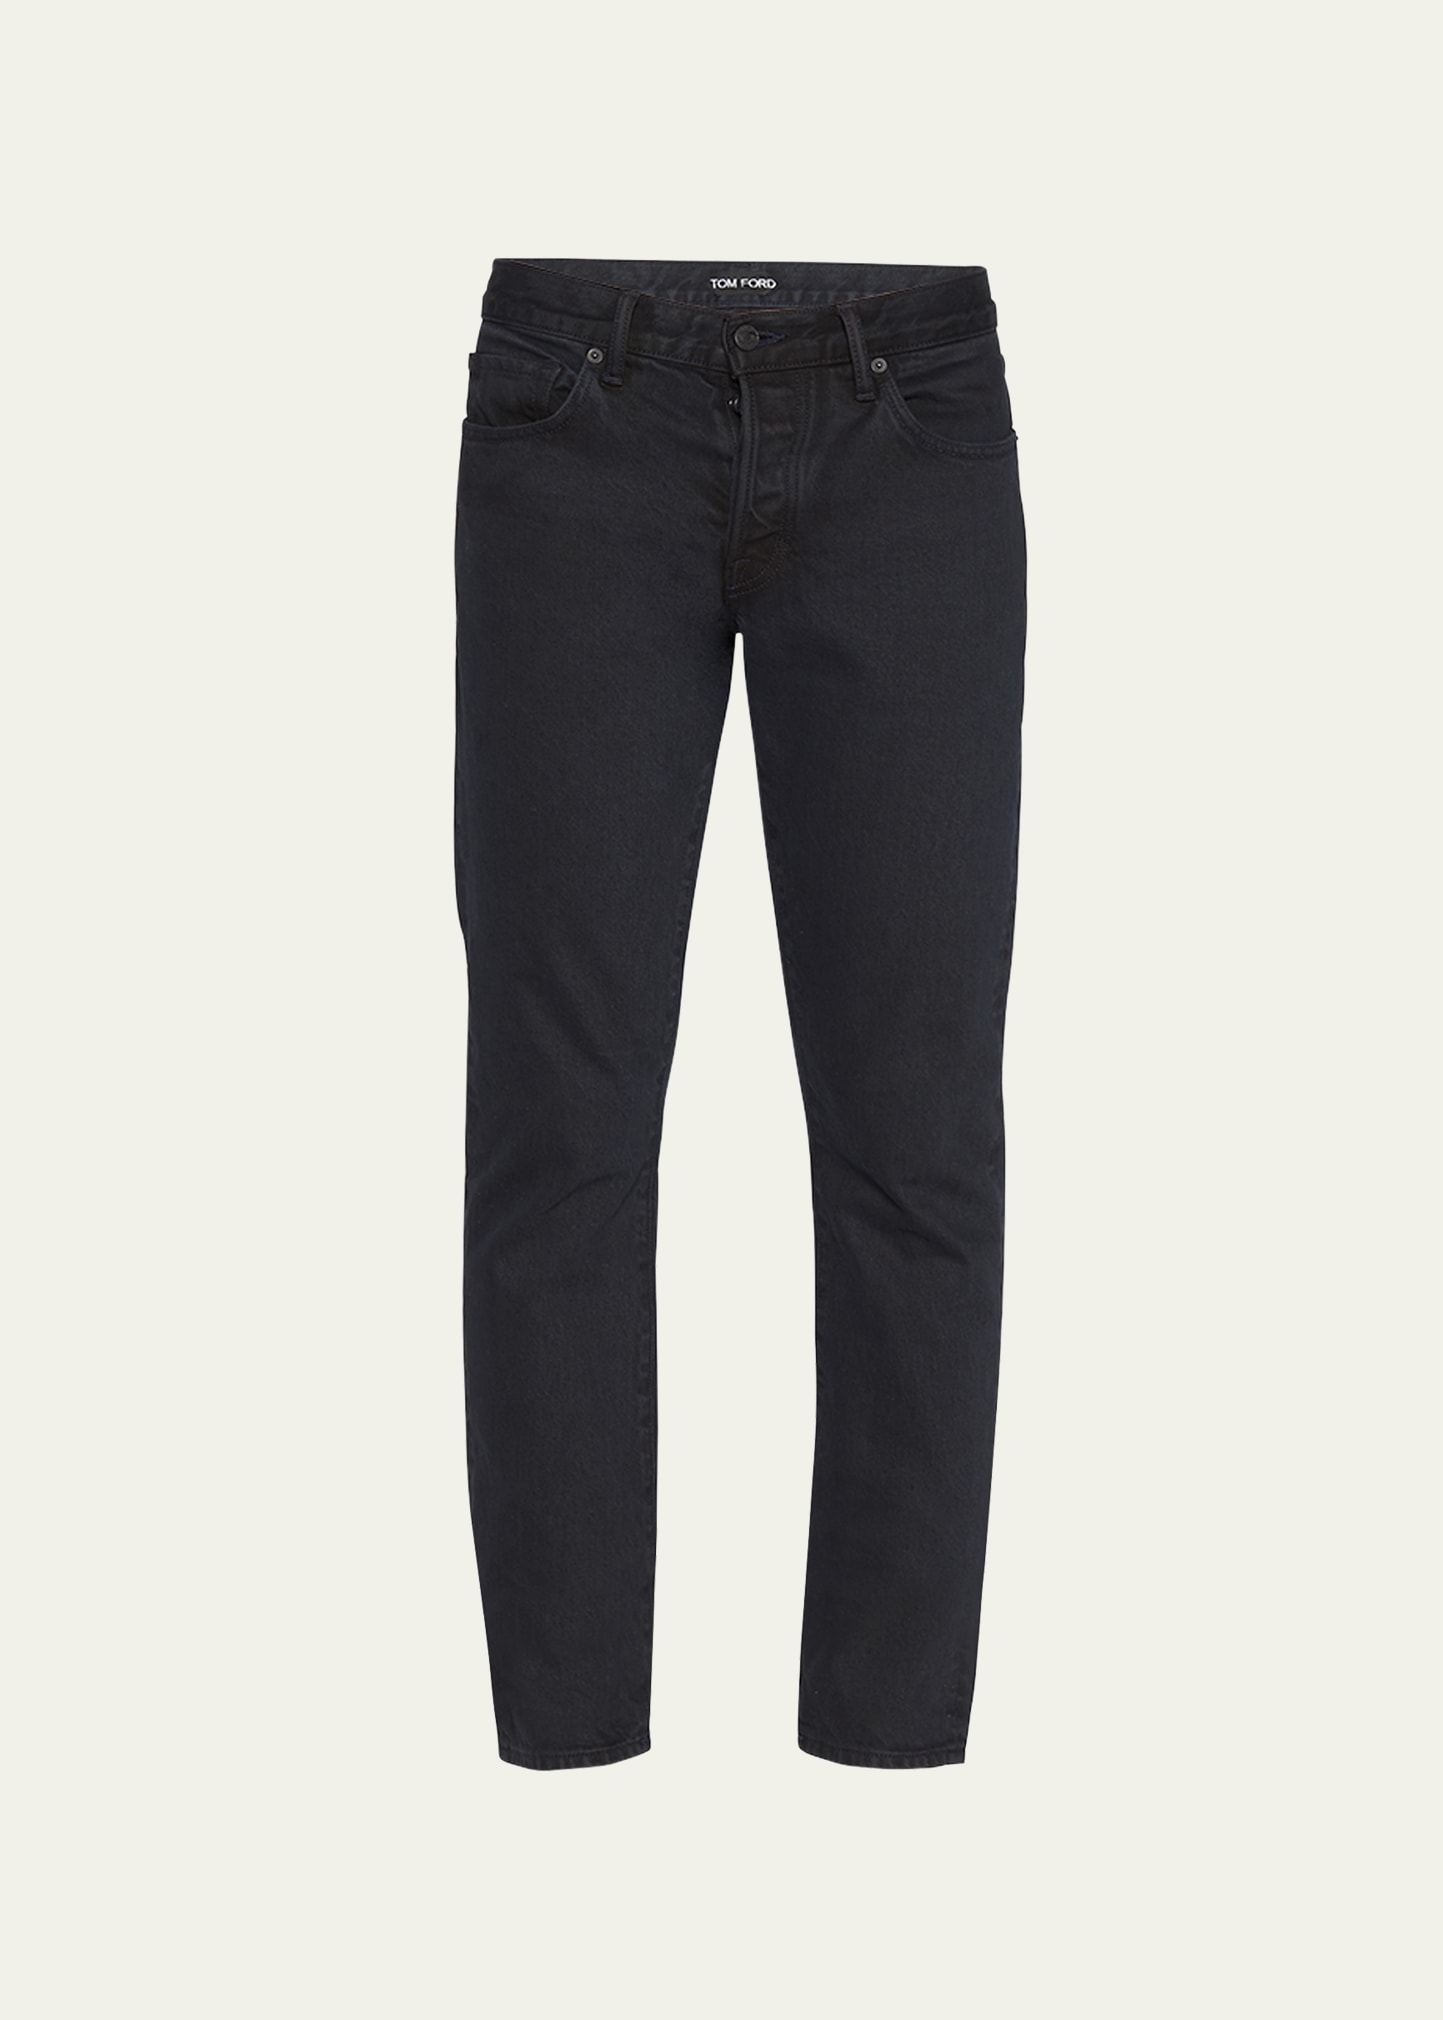 Tom Ford Men's Slim Fit 5-pocket Jeans In Washed Ind